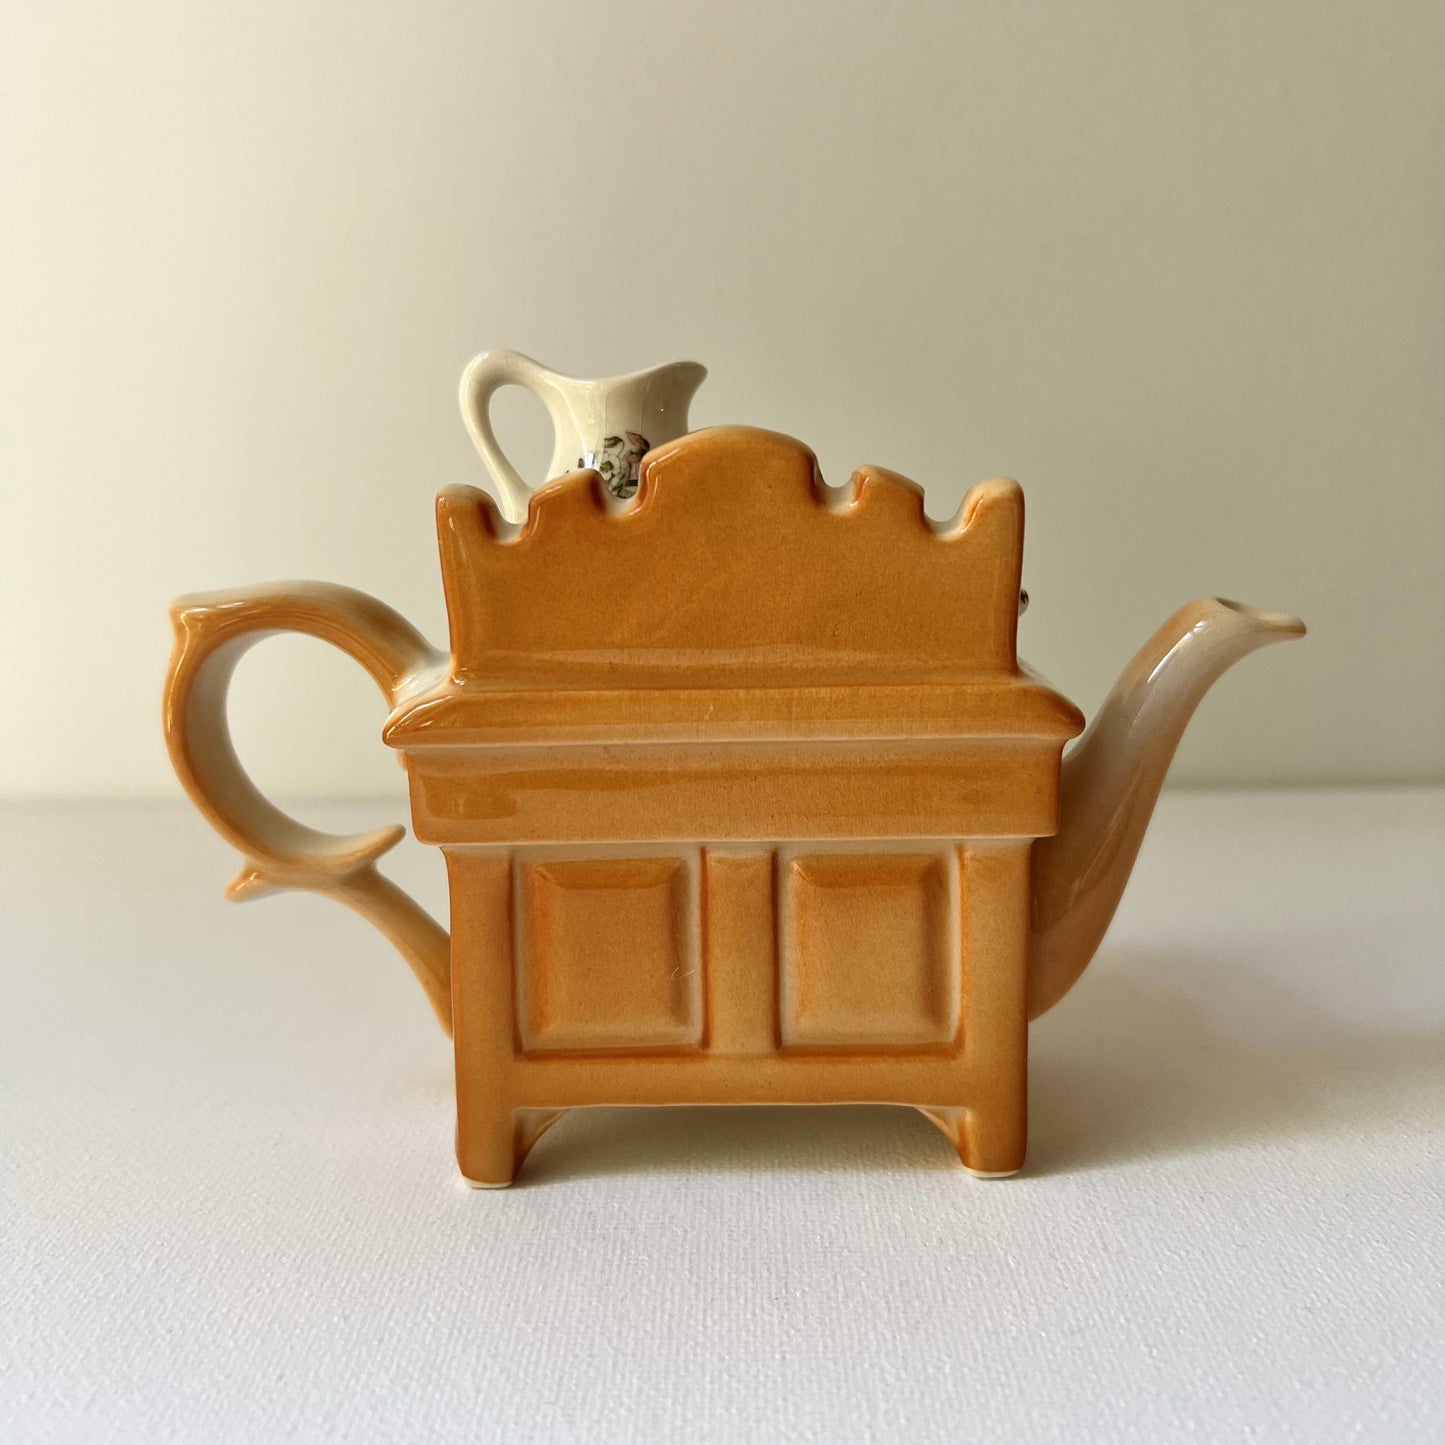 【Vintage】England - PORTMEIRION Wash Stannd Teapot